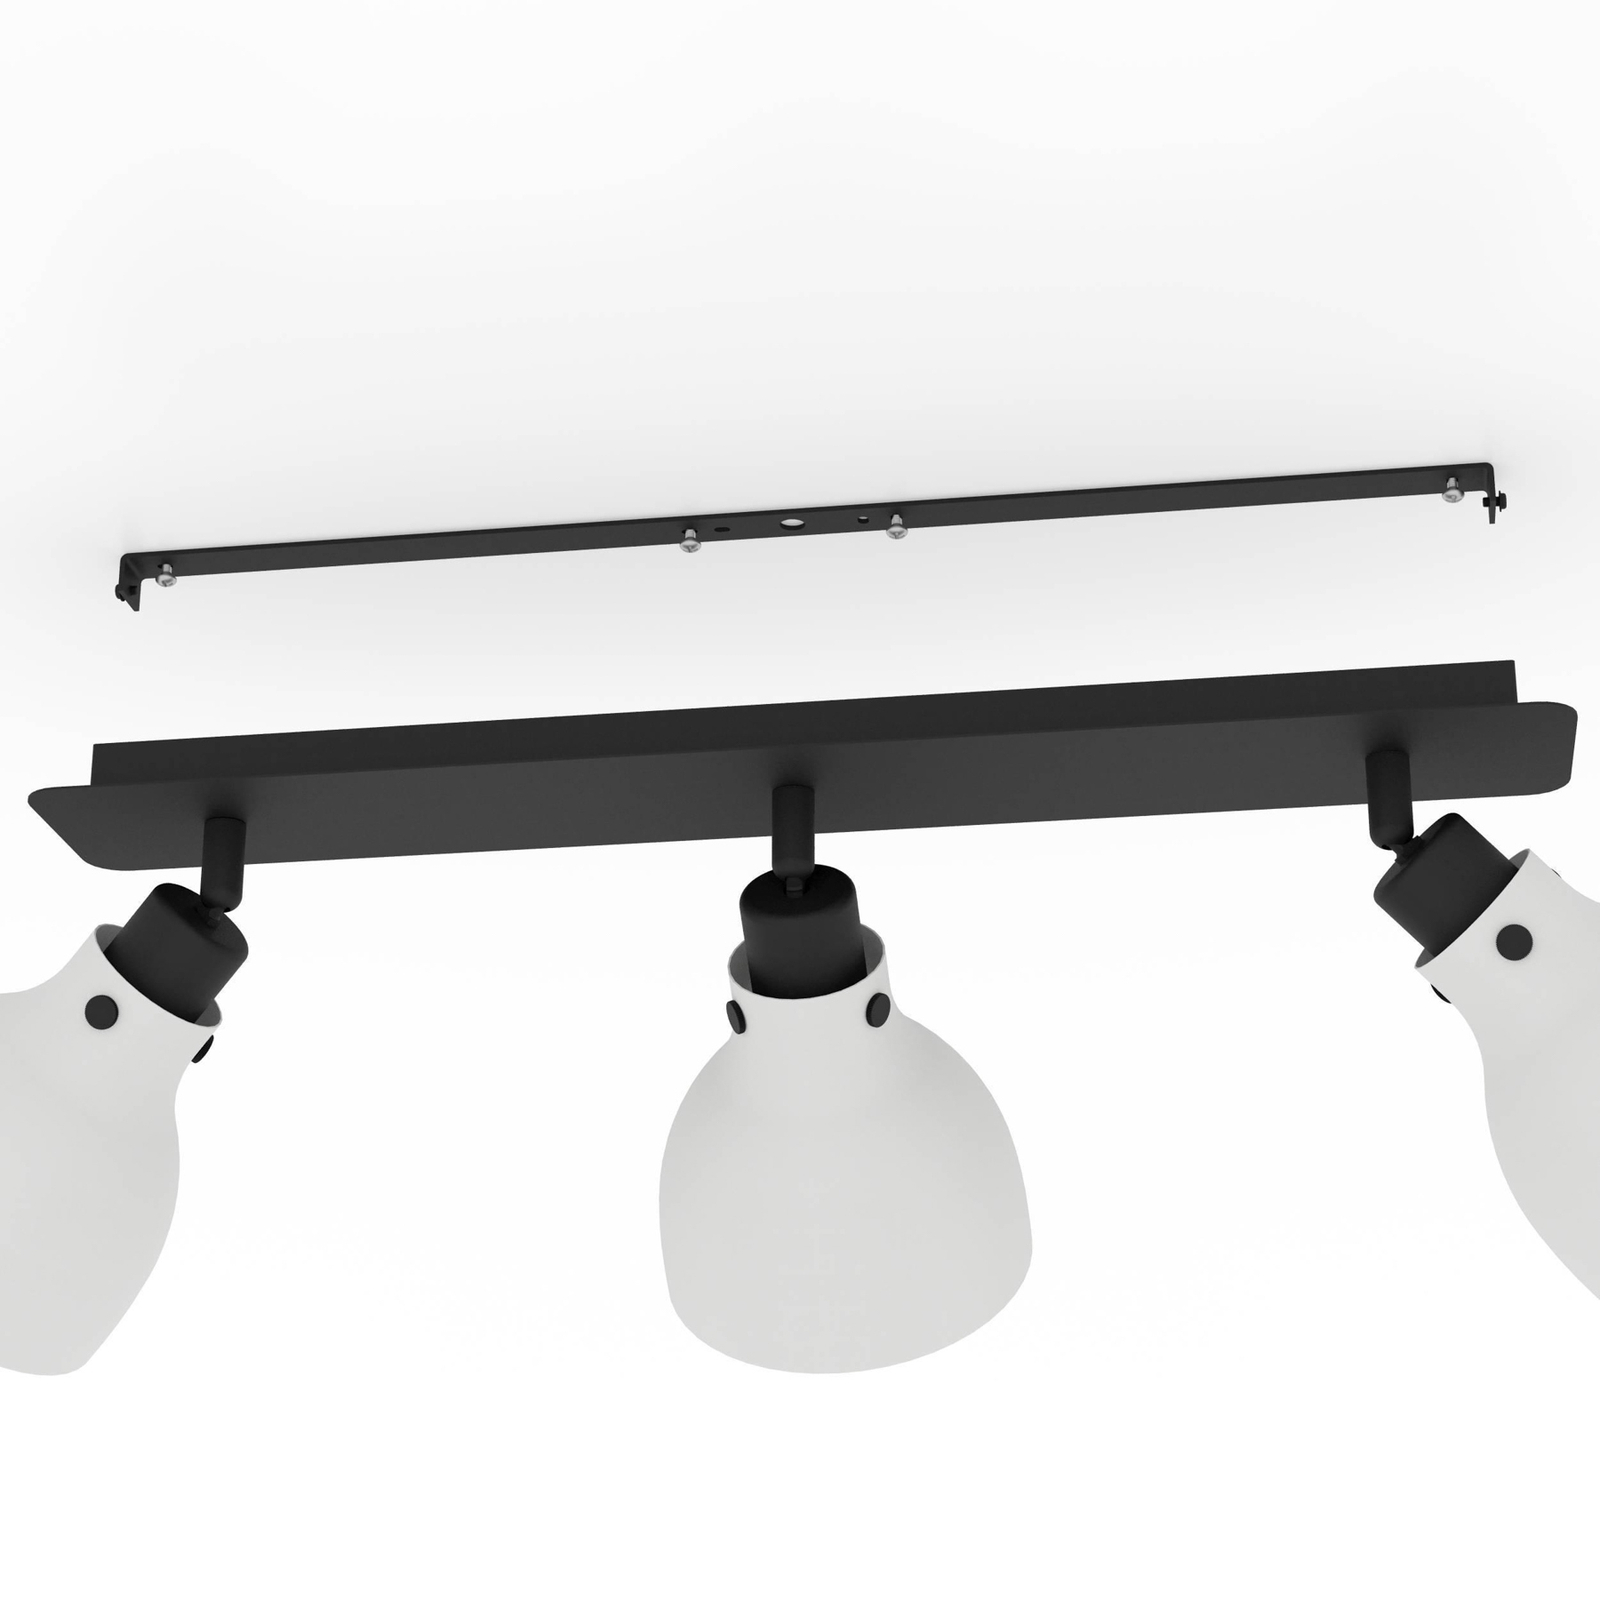 Matlock downlight, lengde 74 cm, grå/svart, 3 lyskilder.